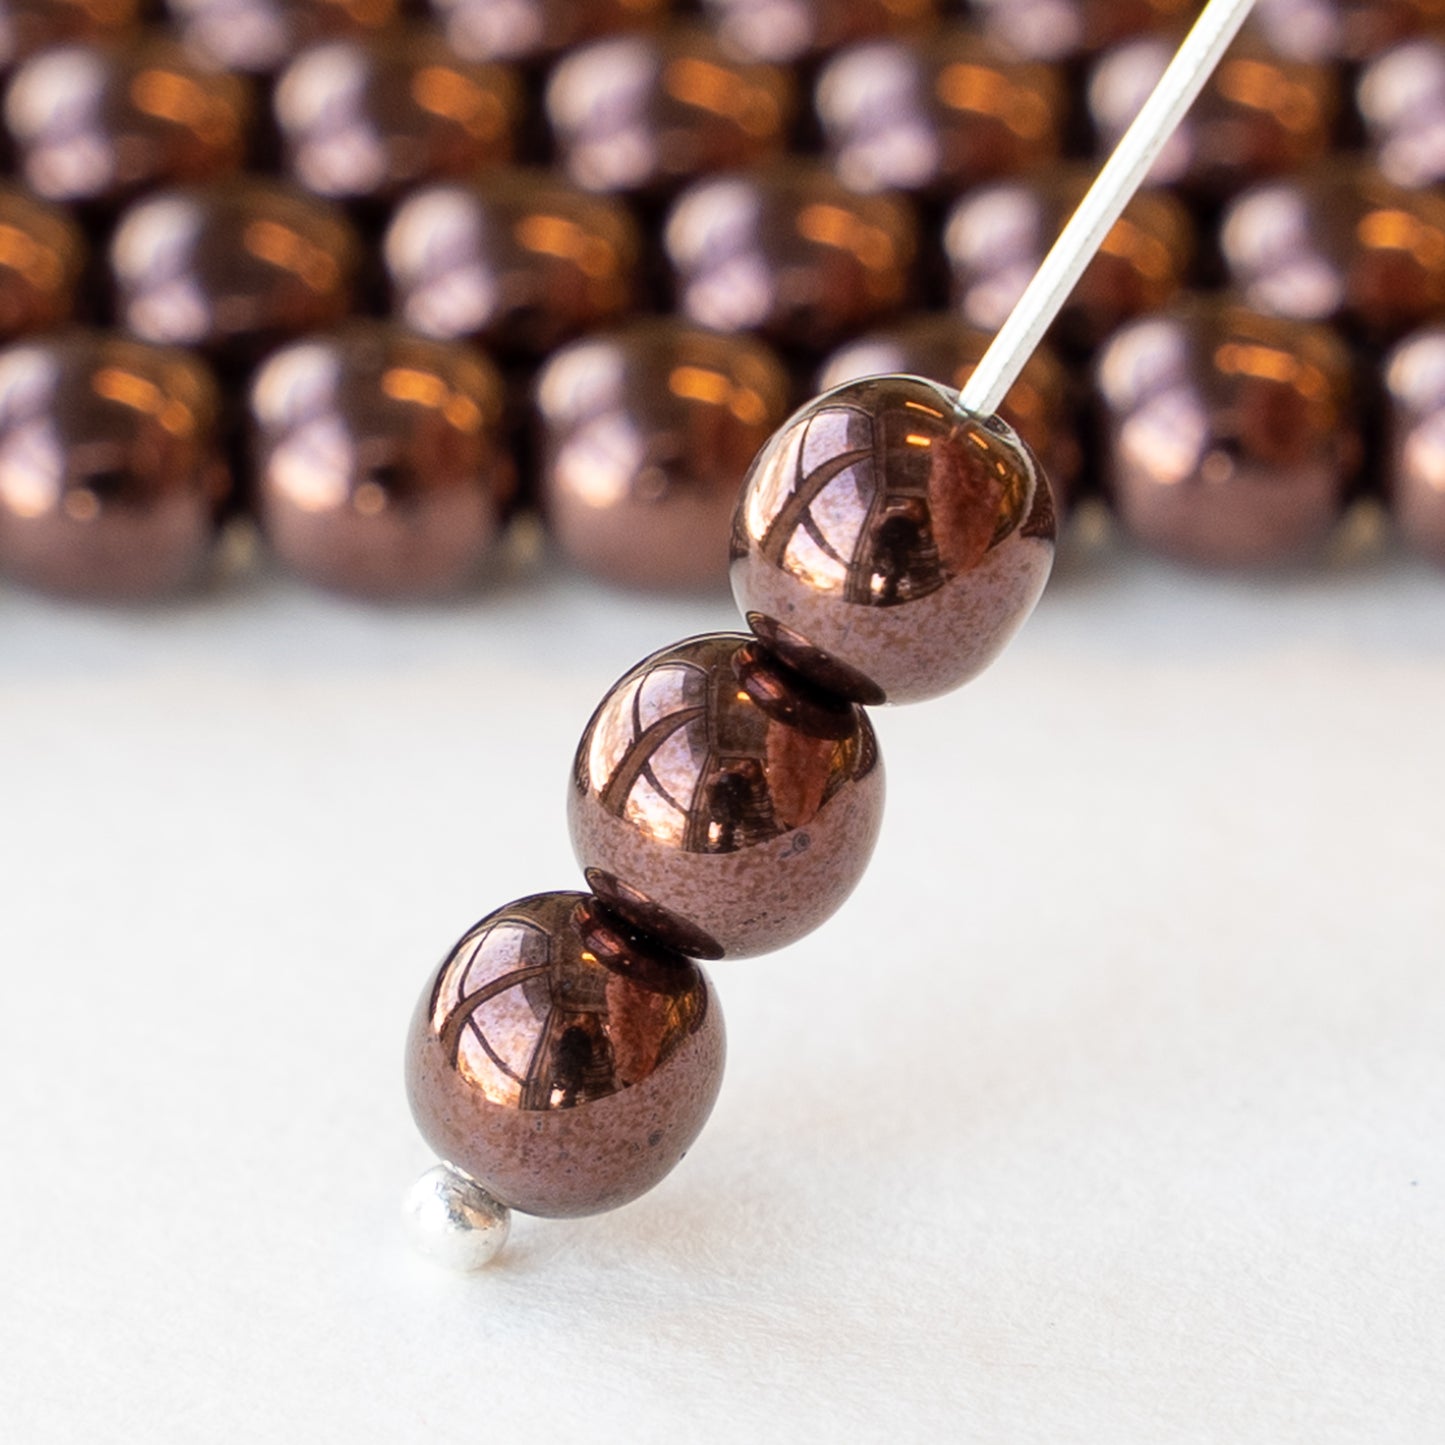 6mm Round Glass Beads - Metallic Bronzy Purple - 42 beads